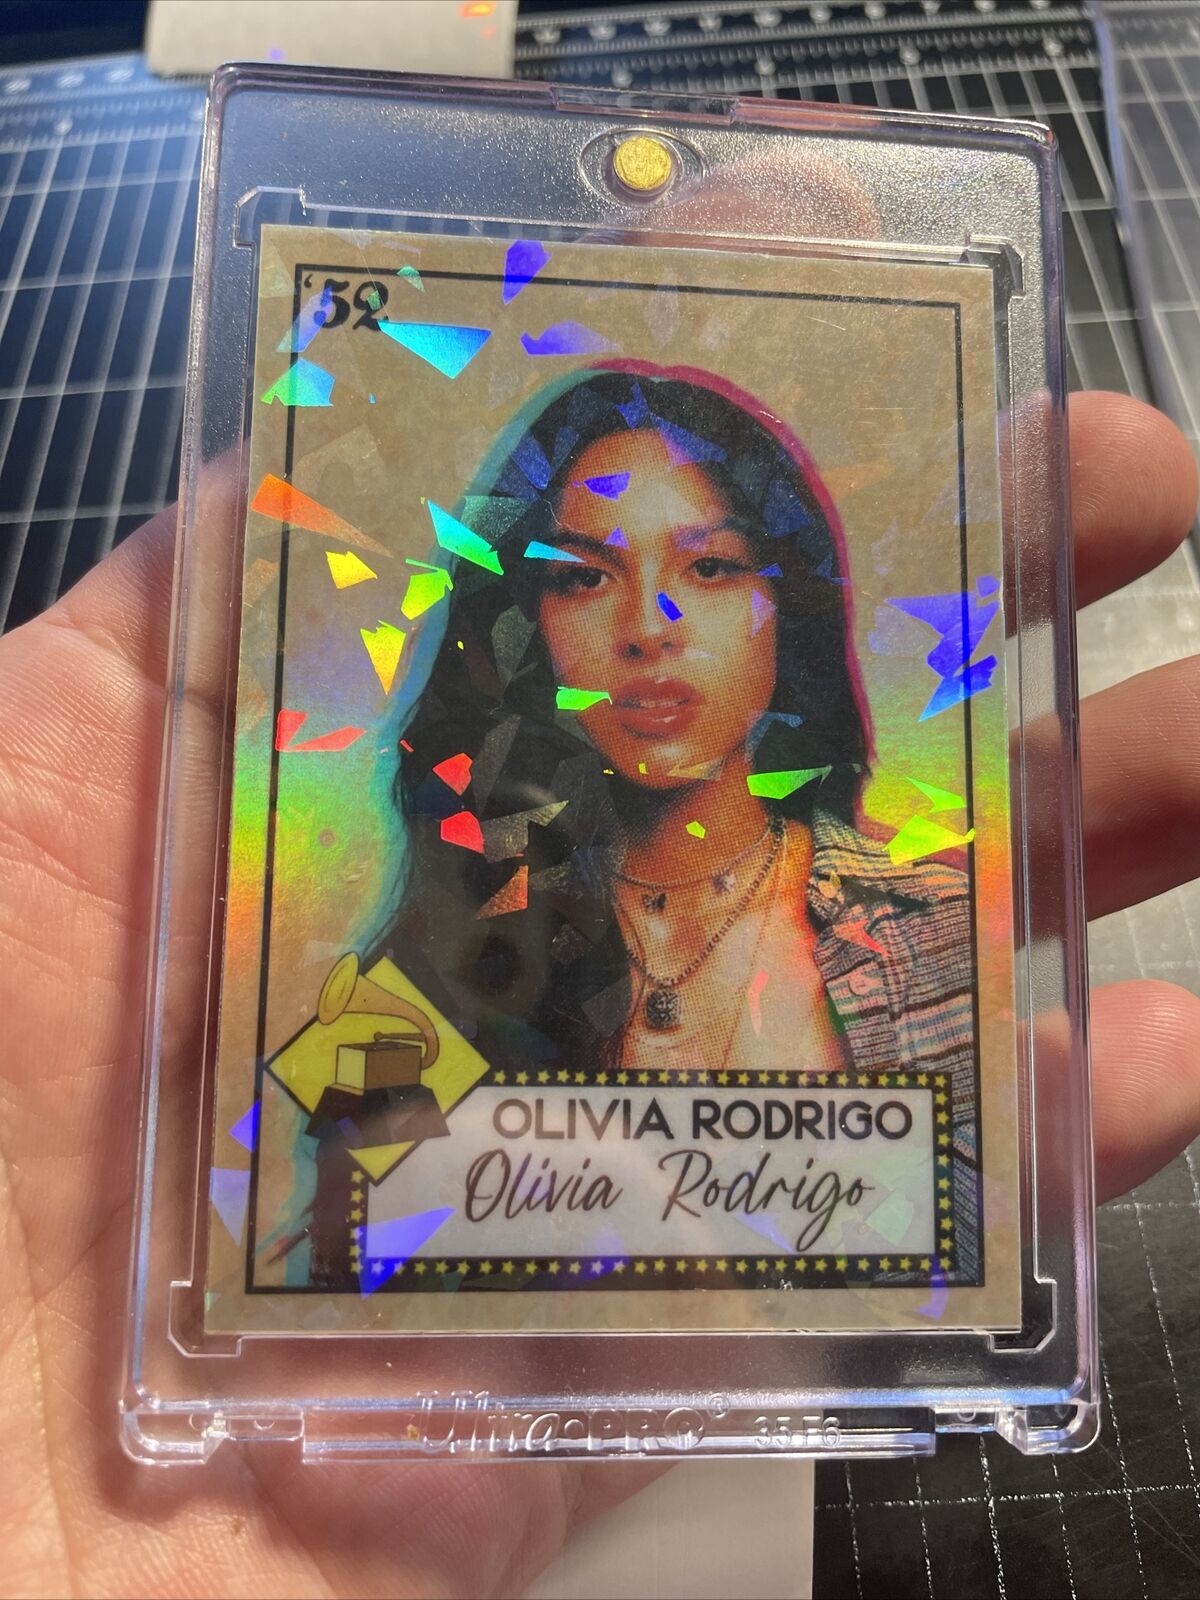 1/1 Holo Cracked Ice Olivia Rodrigo Trading Card By MPRINTS